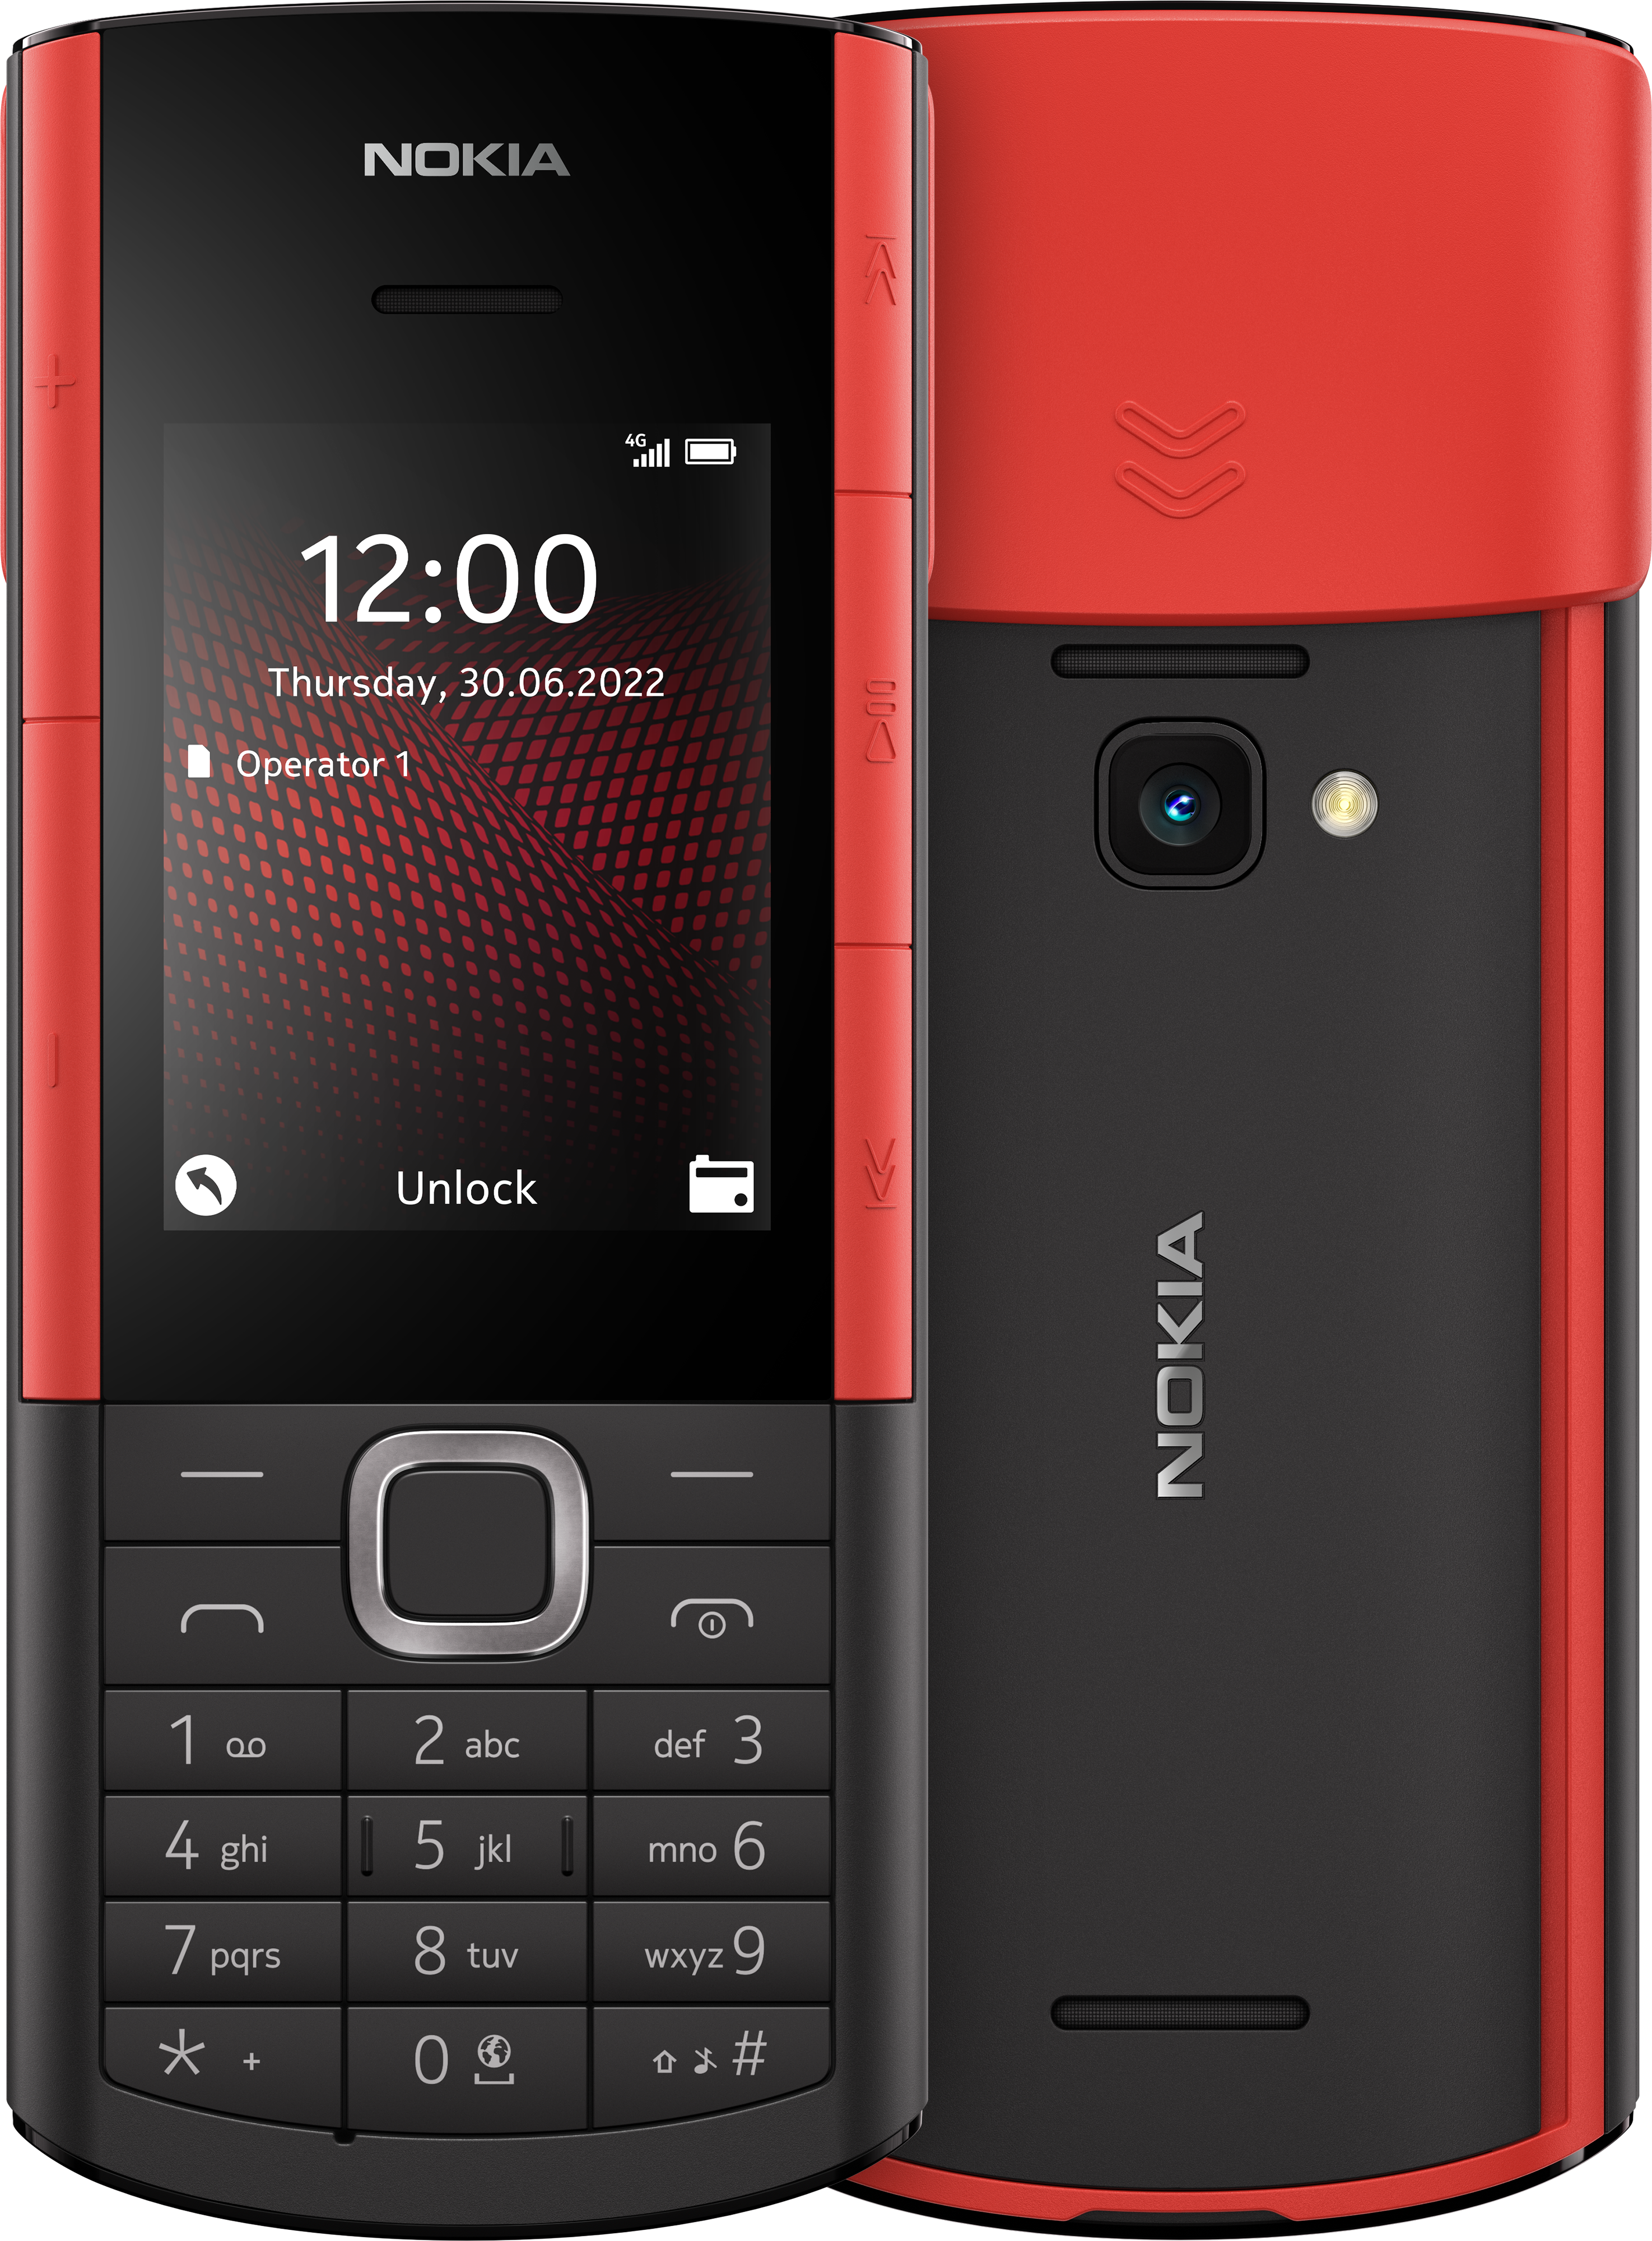 Nokia 5710 XpressAudio: Chào mừng bạn đến với huyền thoại âm nhạc - Nokia 5710 XpressAudio! Chiếc điện thoại kinh điển này sở hữu chất lượng âm thanh đỉnh cao, giúp bạn trải nghiệm những giai điệu yêu thích một cách hoàn hảo. Hãy xem hình ảnh để cảm nhận sự xuất sắc của Nokia 5710 XpressAudio.